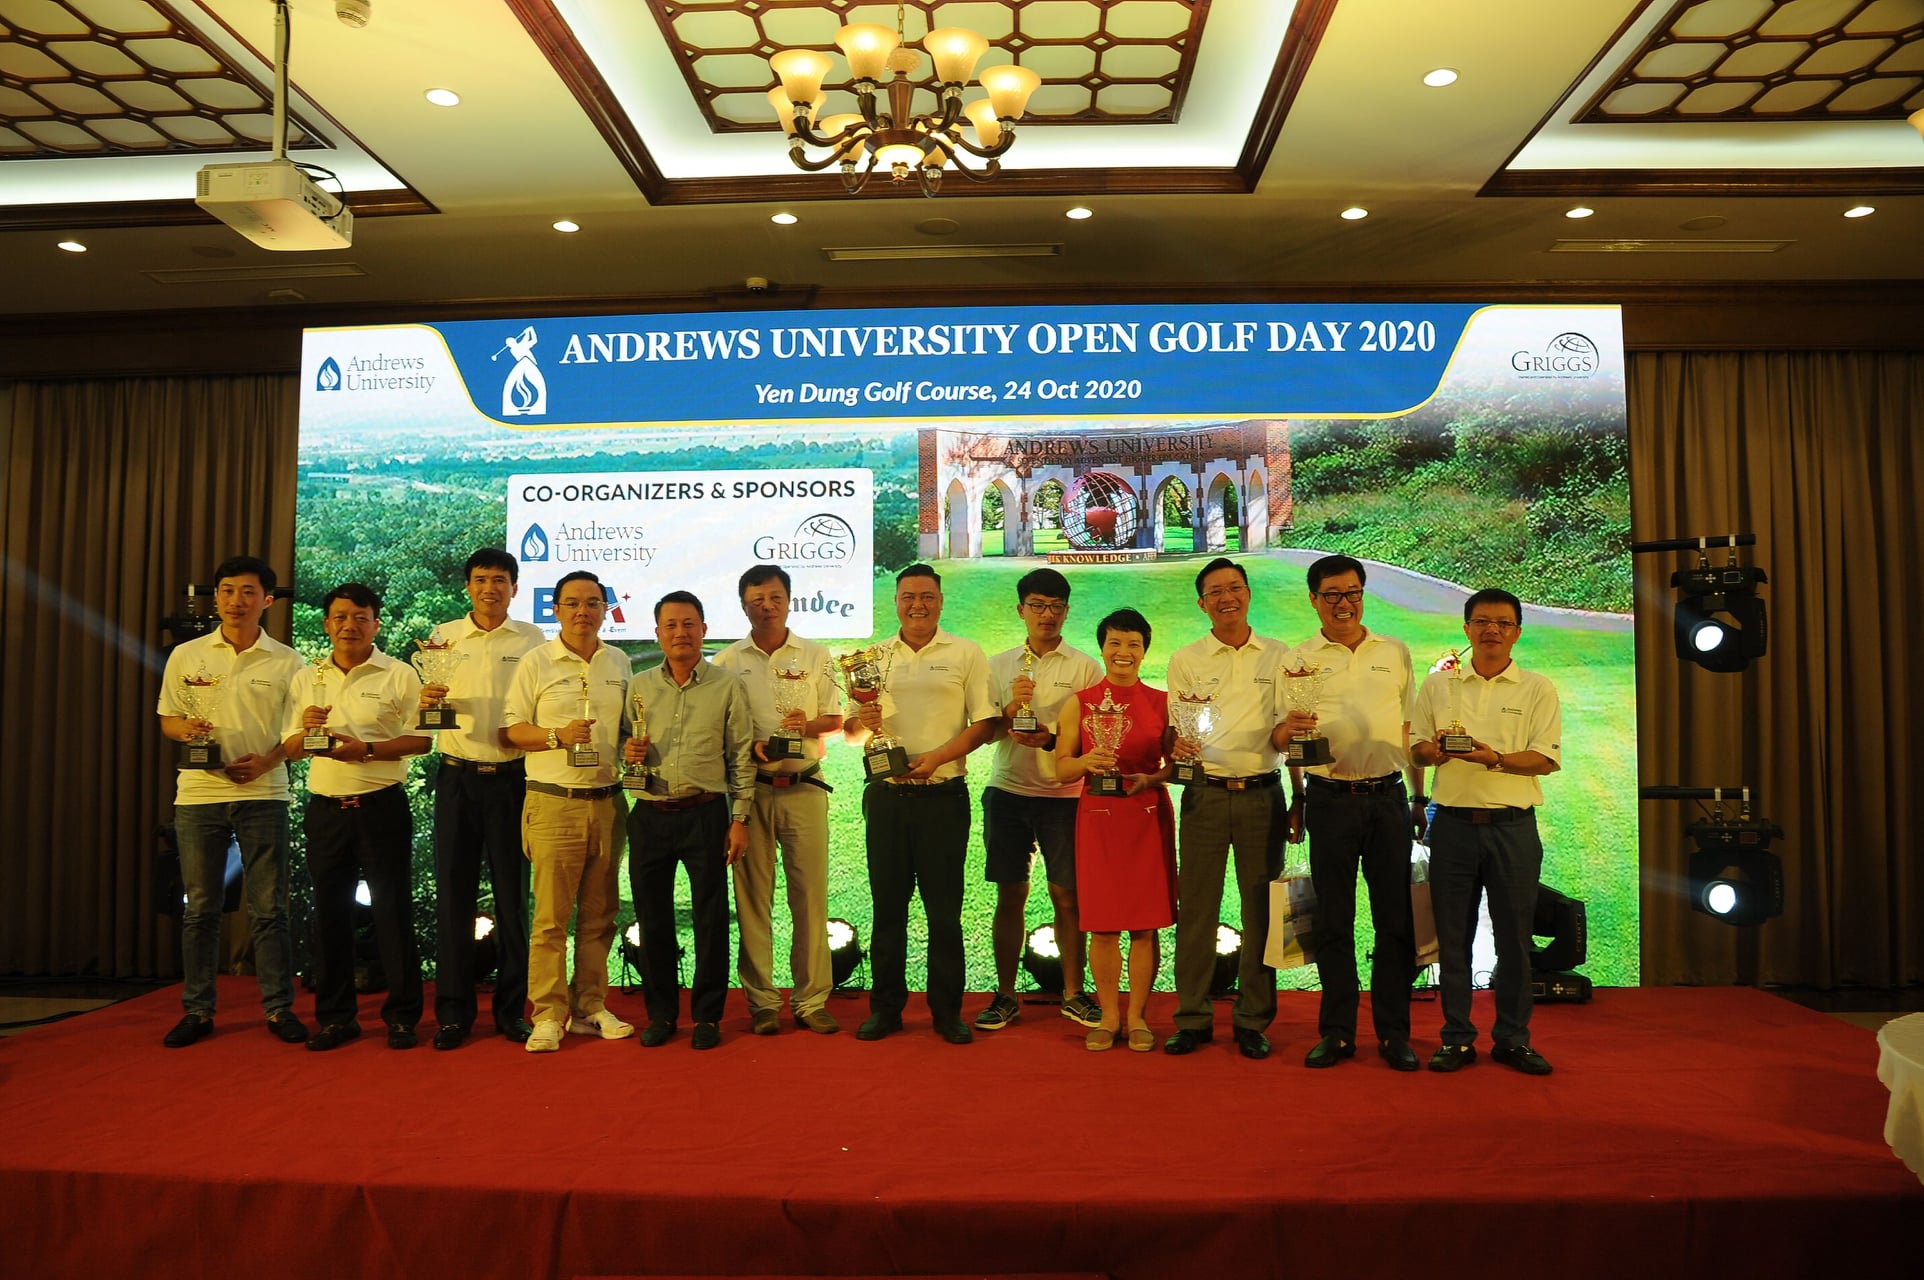 Golfer Trần Quang vô địch giải ANDREWS UNIVERSITY OPEN GOLF DAY 2020